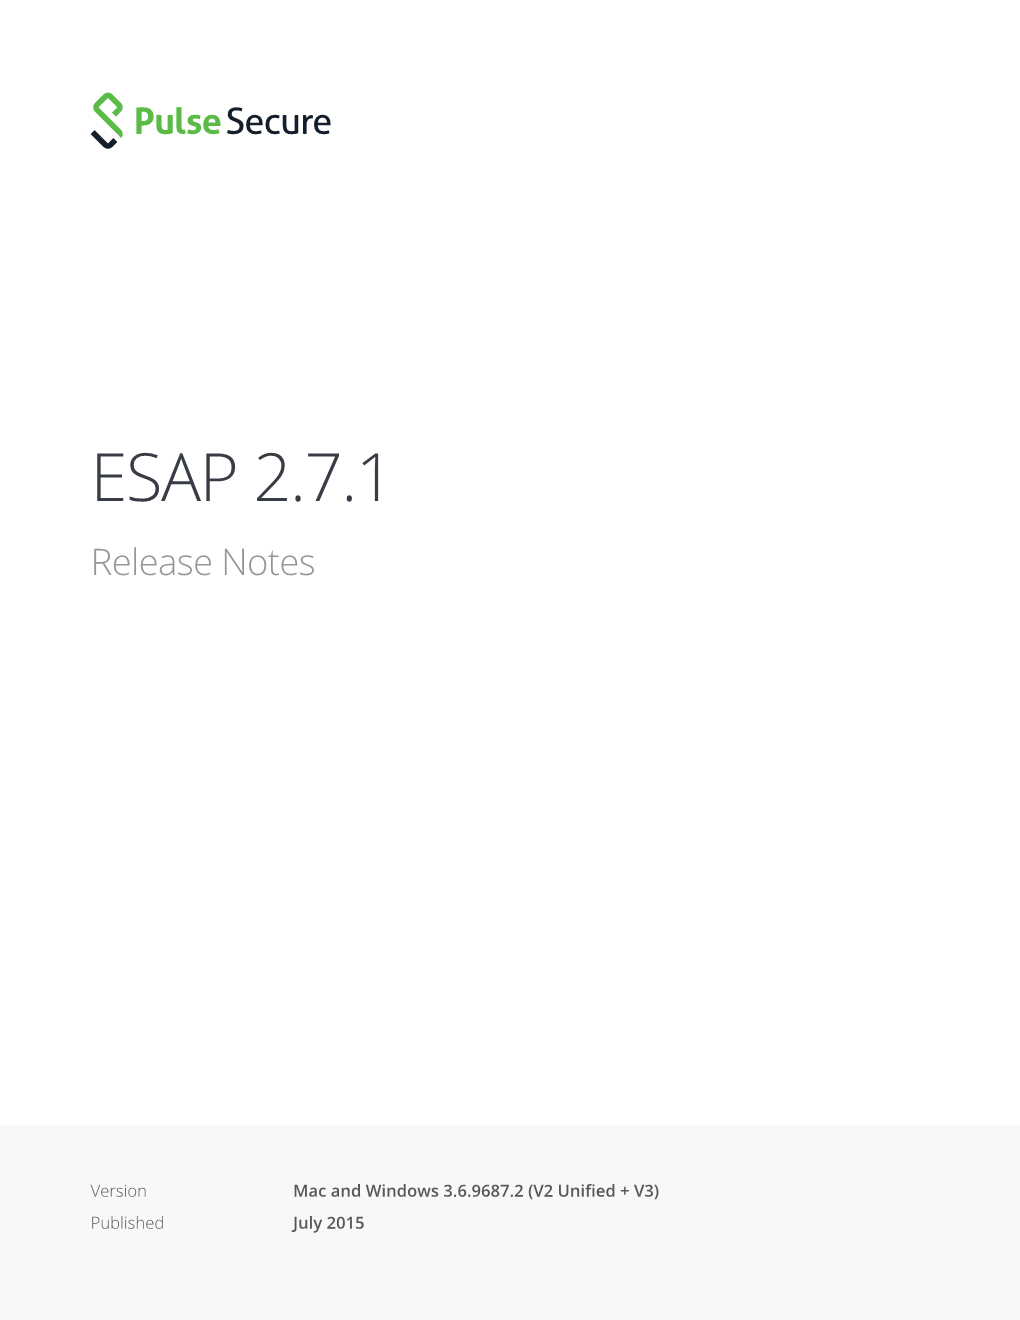 ESAP 2.7.1 Release Notes